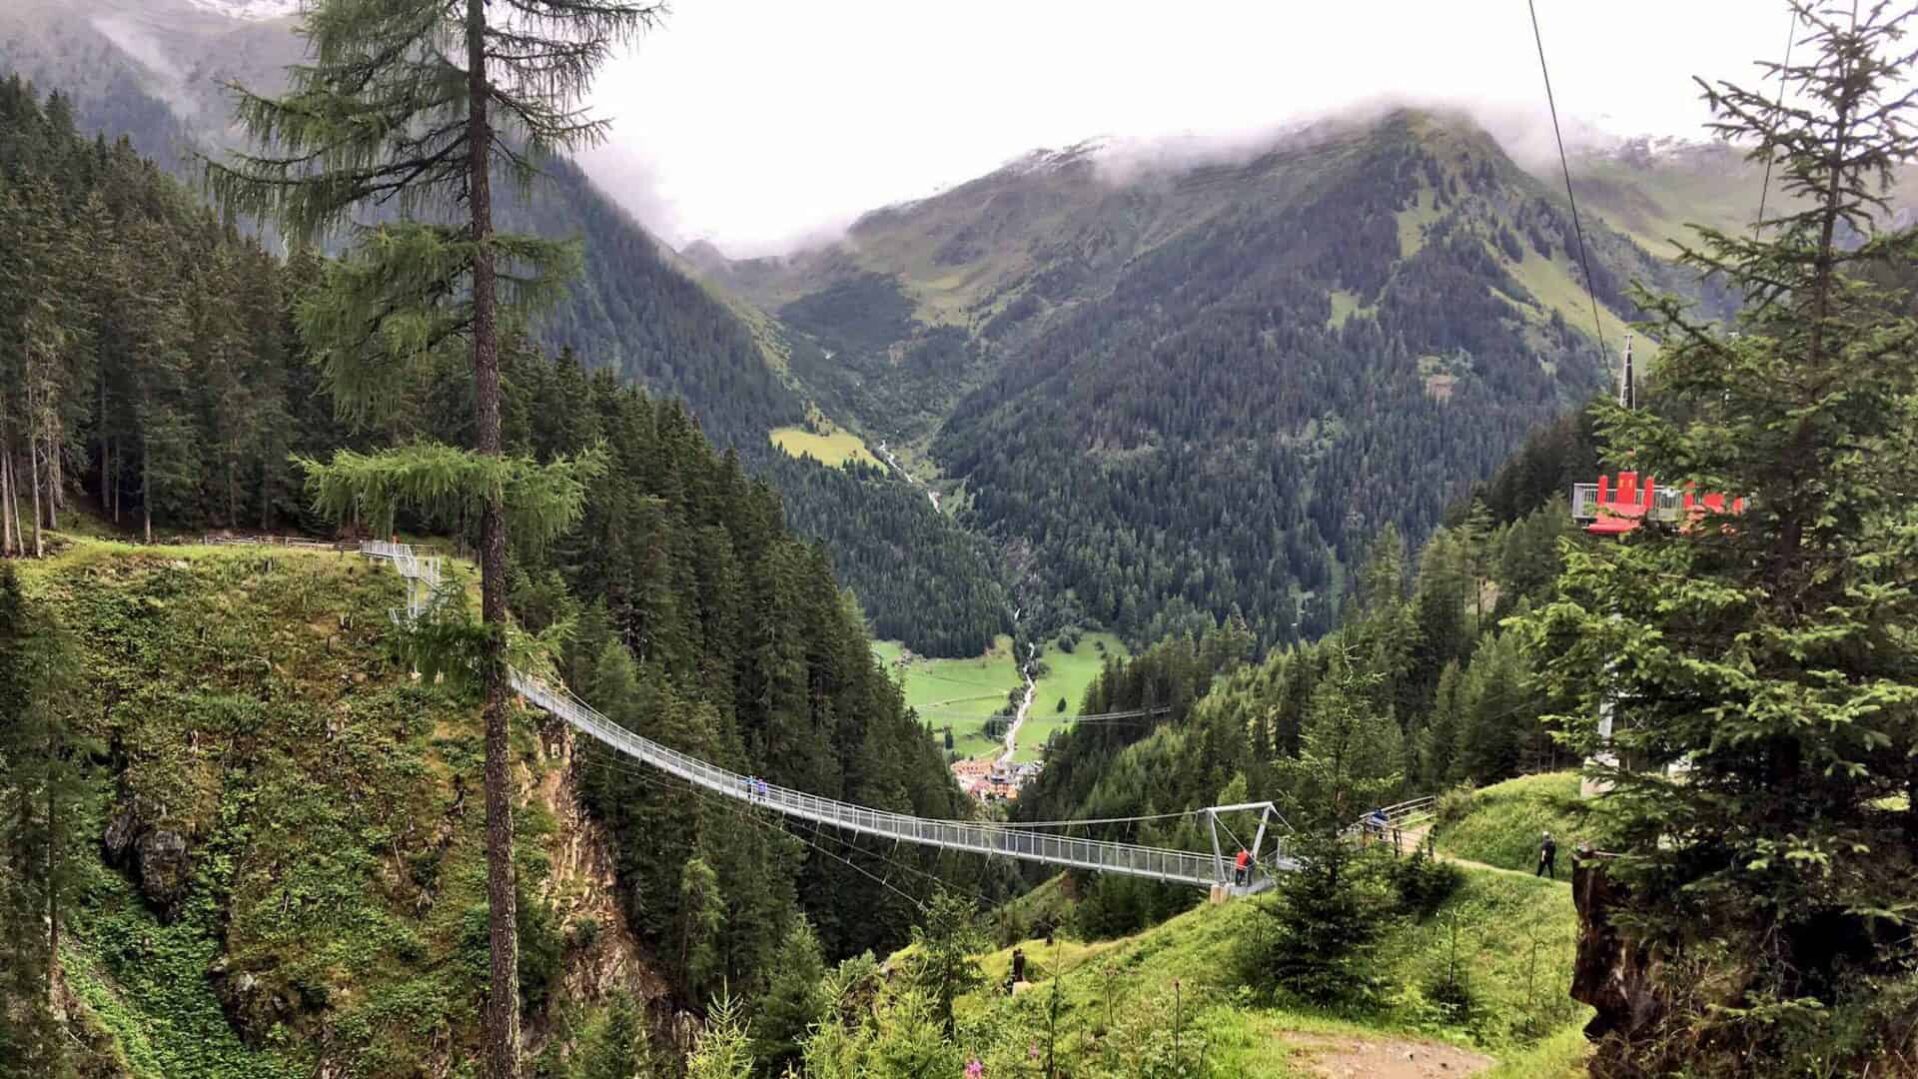 Drie wandelaars, twee volwassenen en een kind, genieten van het uitzicht terwijl ze op een indrukwekkende hangbrug in Ischgl, Oostenrijk staan. De brug, die hoog boven een groene kloof uitstrekt, biedt een avontuurlijke route tussen de dichte naaldbossen, en geeft een panoramisch uitzicht op het dorpje beneden.